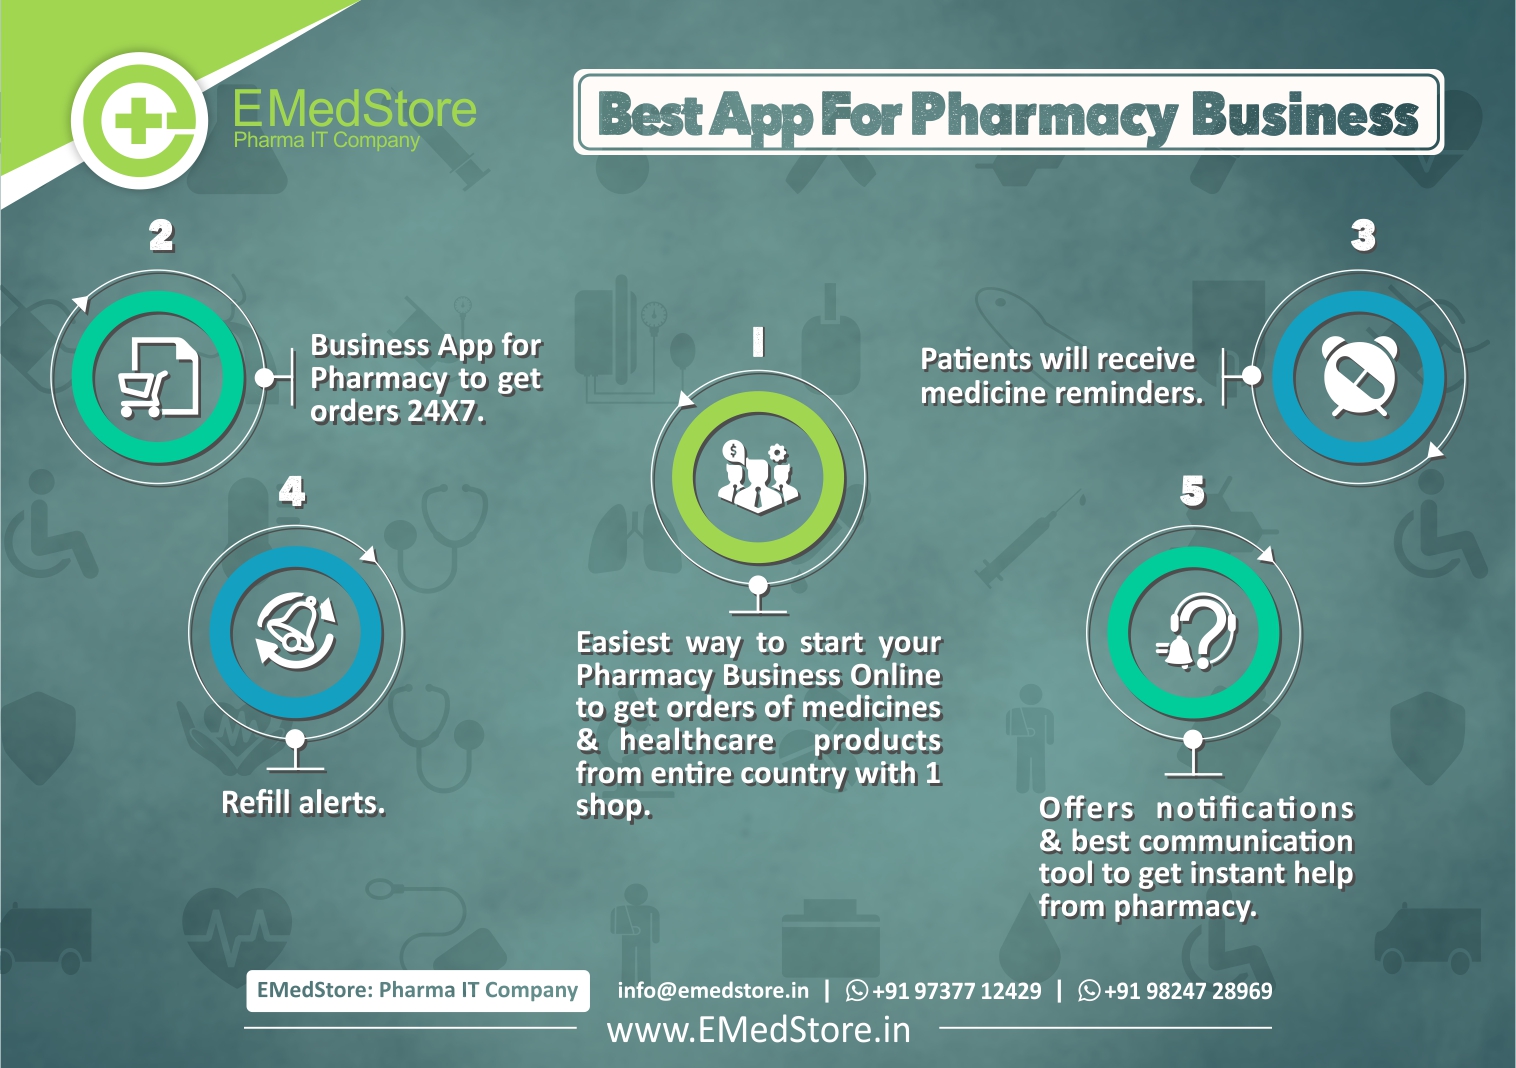 Best App For Pharmacy Business